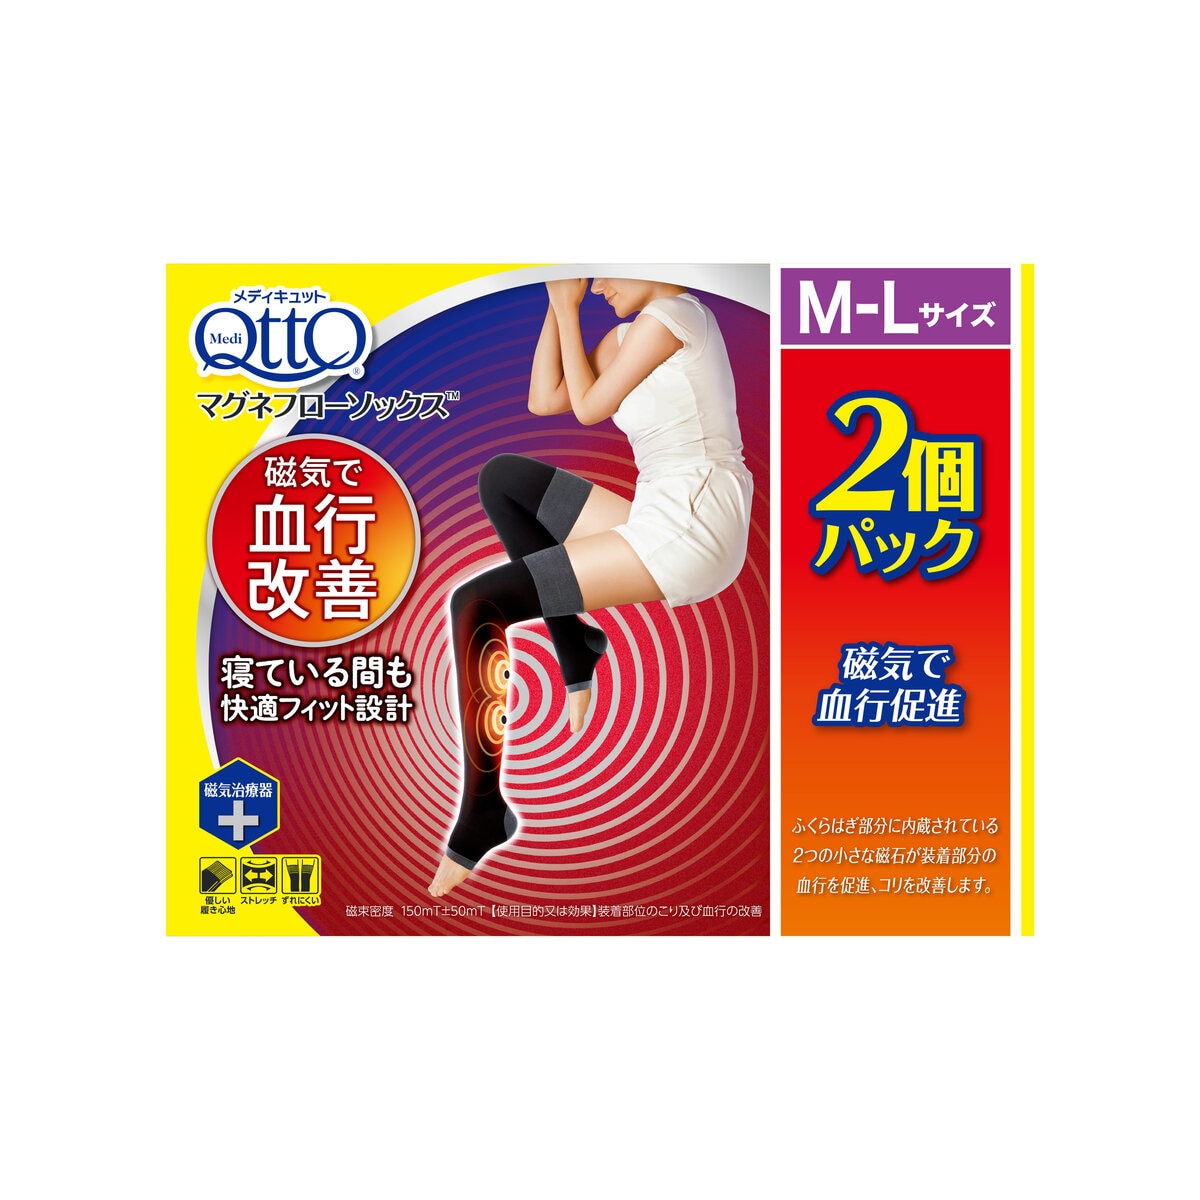 メディキュット マグネフローソックス M-L 2個パック | Costco Japan